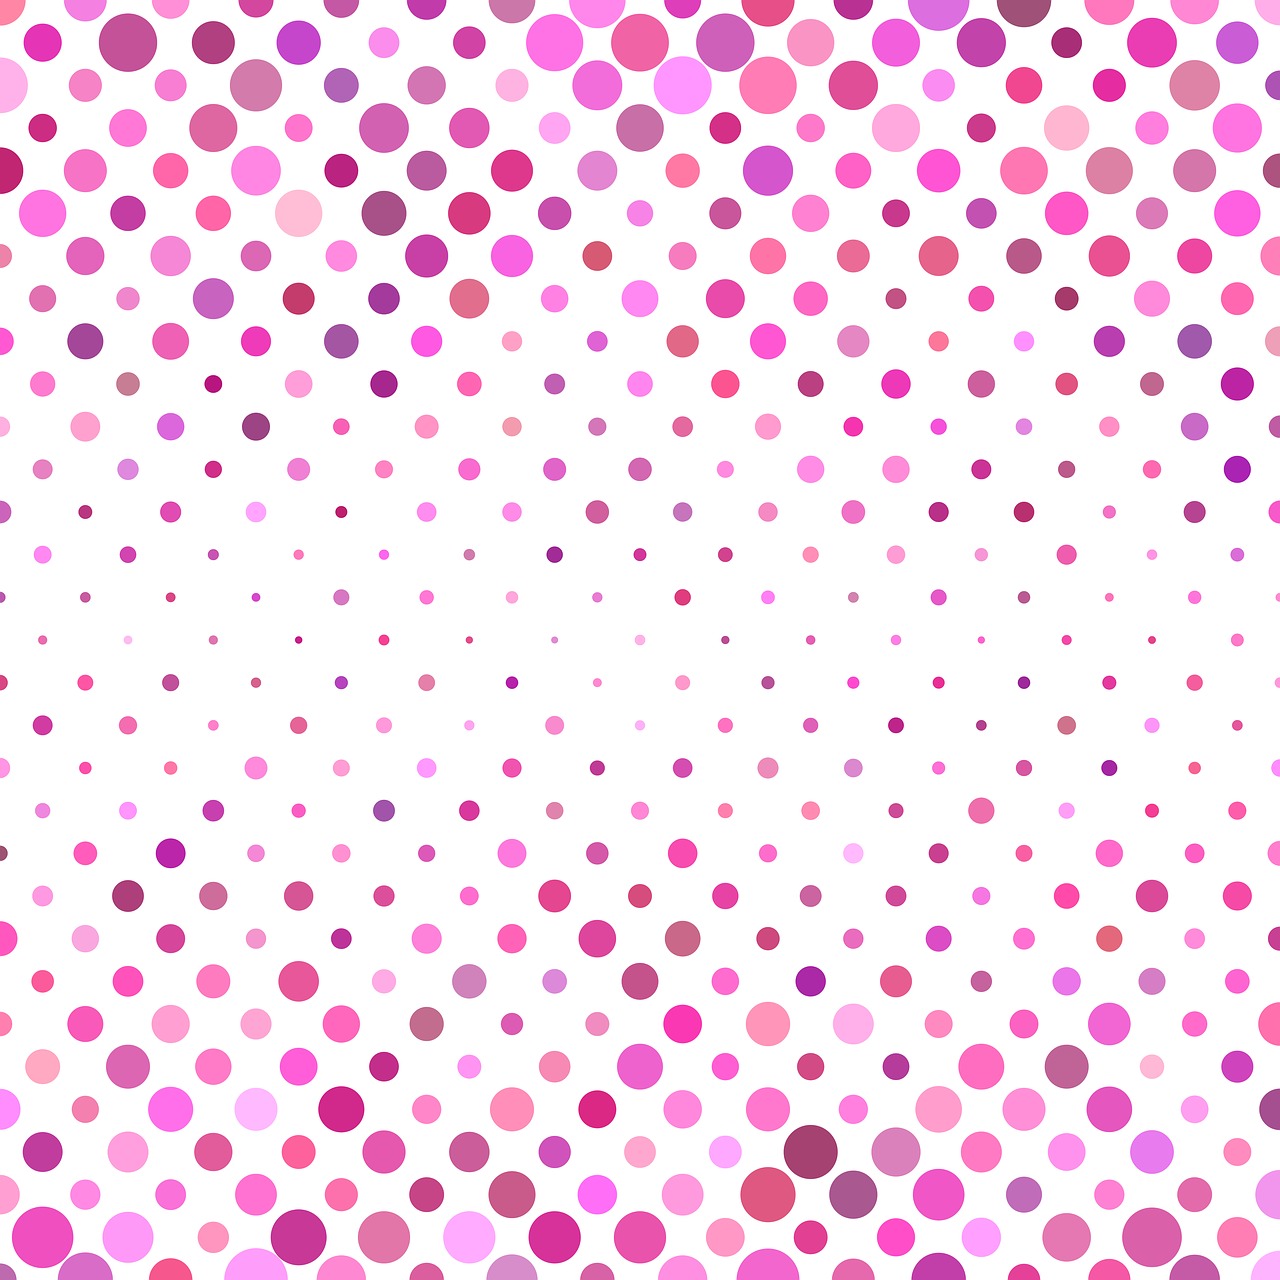 circle dot pattern free photo